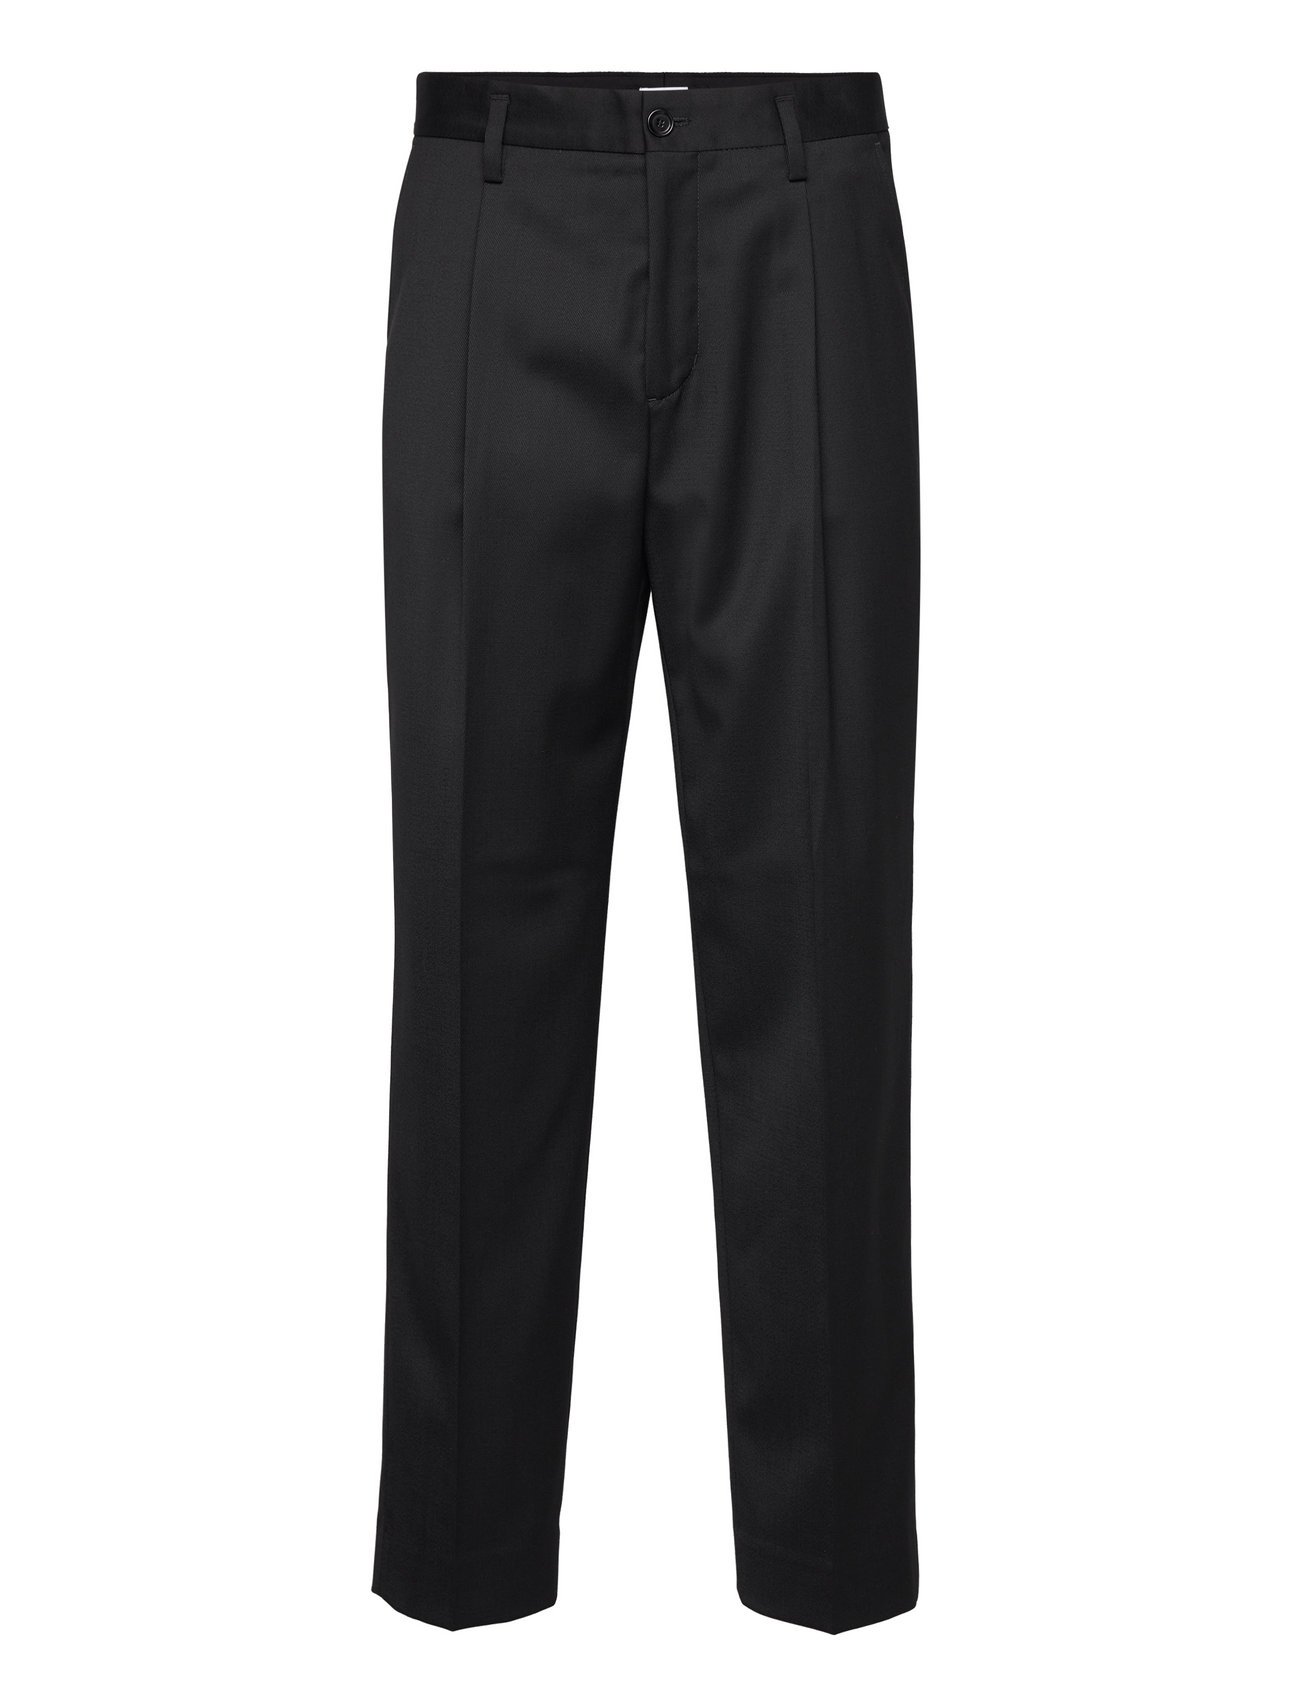 Filippa K Samson Wool Trousers (Black/Svartur) - 33.999 kr | Boozt.com